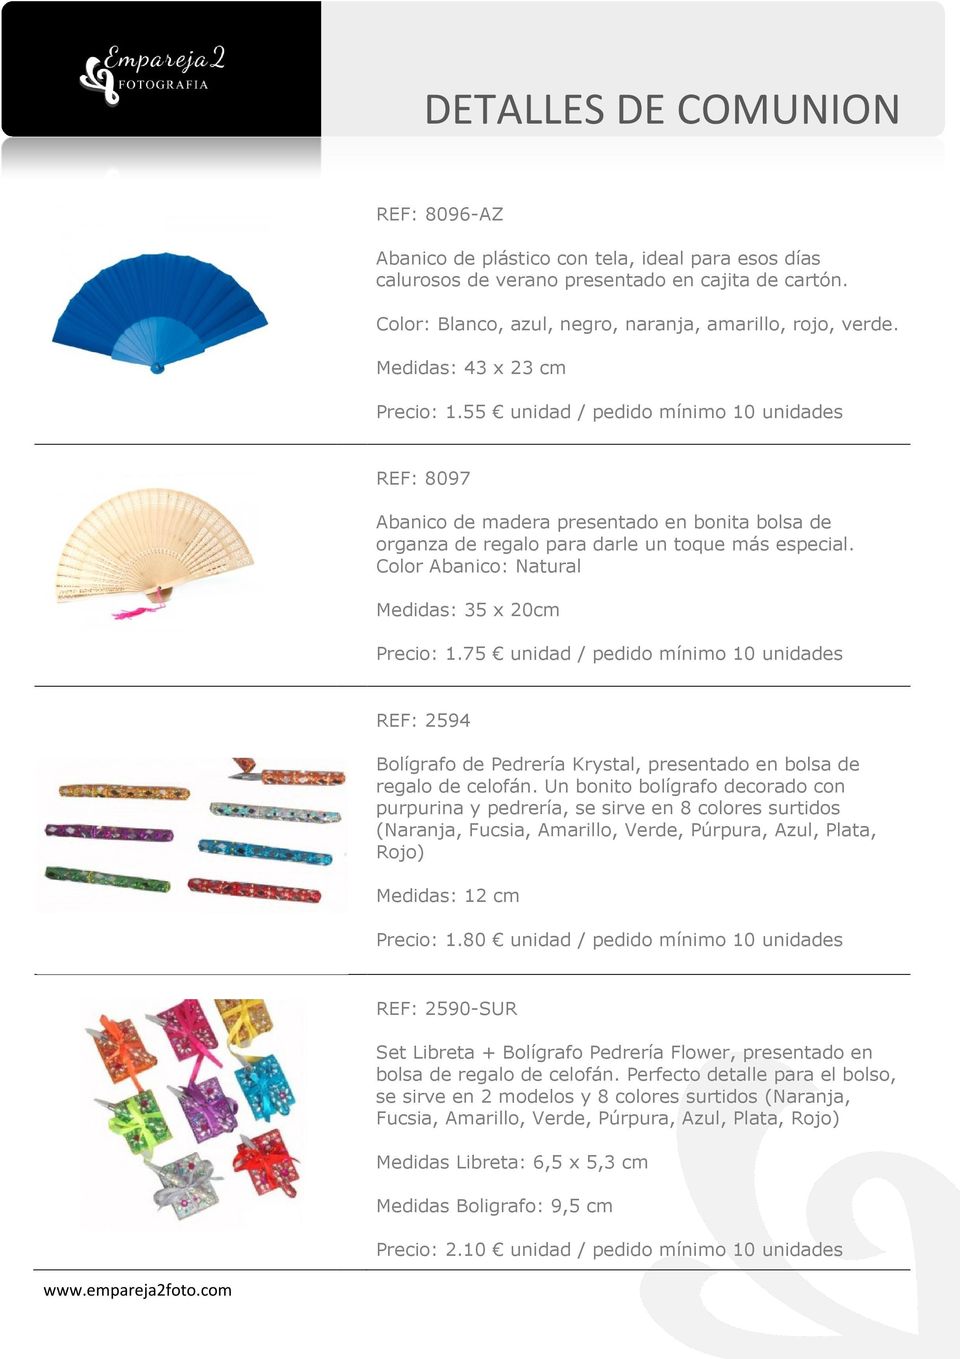 Color Abanico: Natural Medidas: 35 x 20cm Precio: 1.75 unidad / pedido mínimo 10 unidades REF: 2594 Bolígrafo de Pedrería Krystal, presentado en bolsa de regalo de celofán.